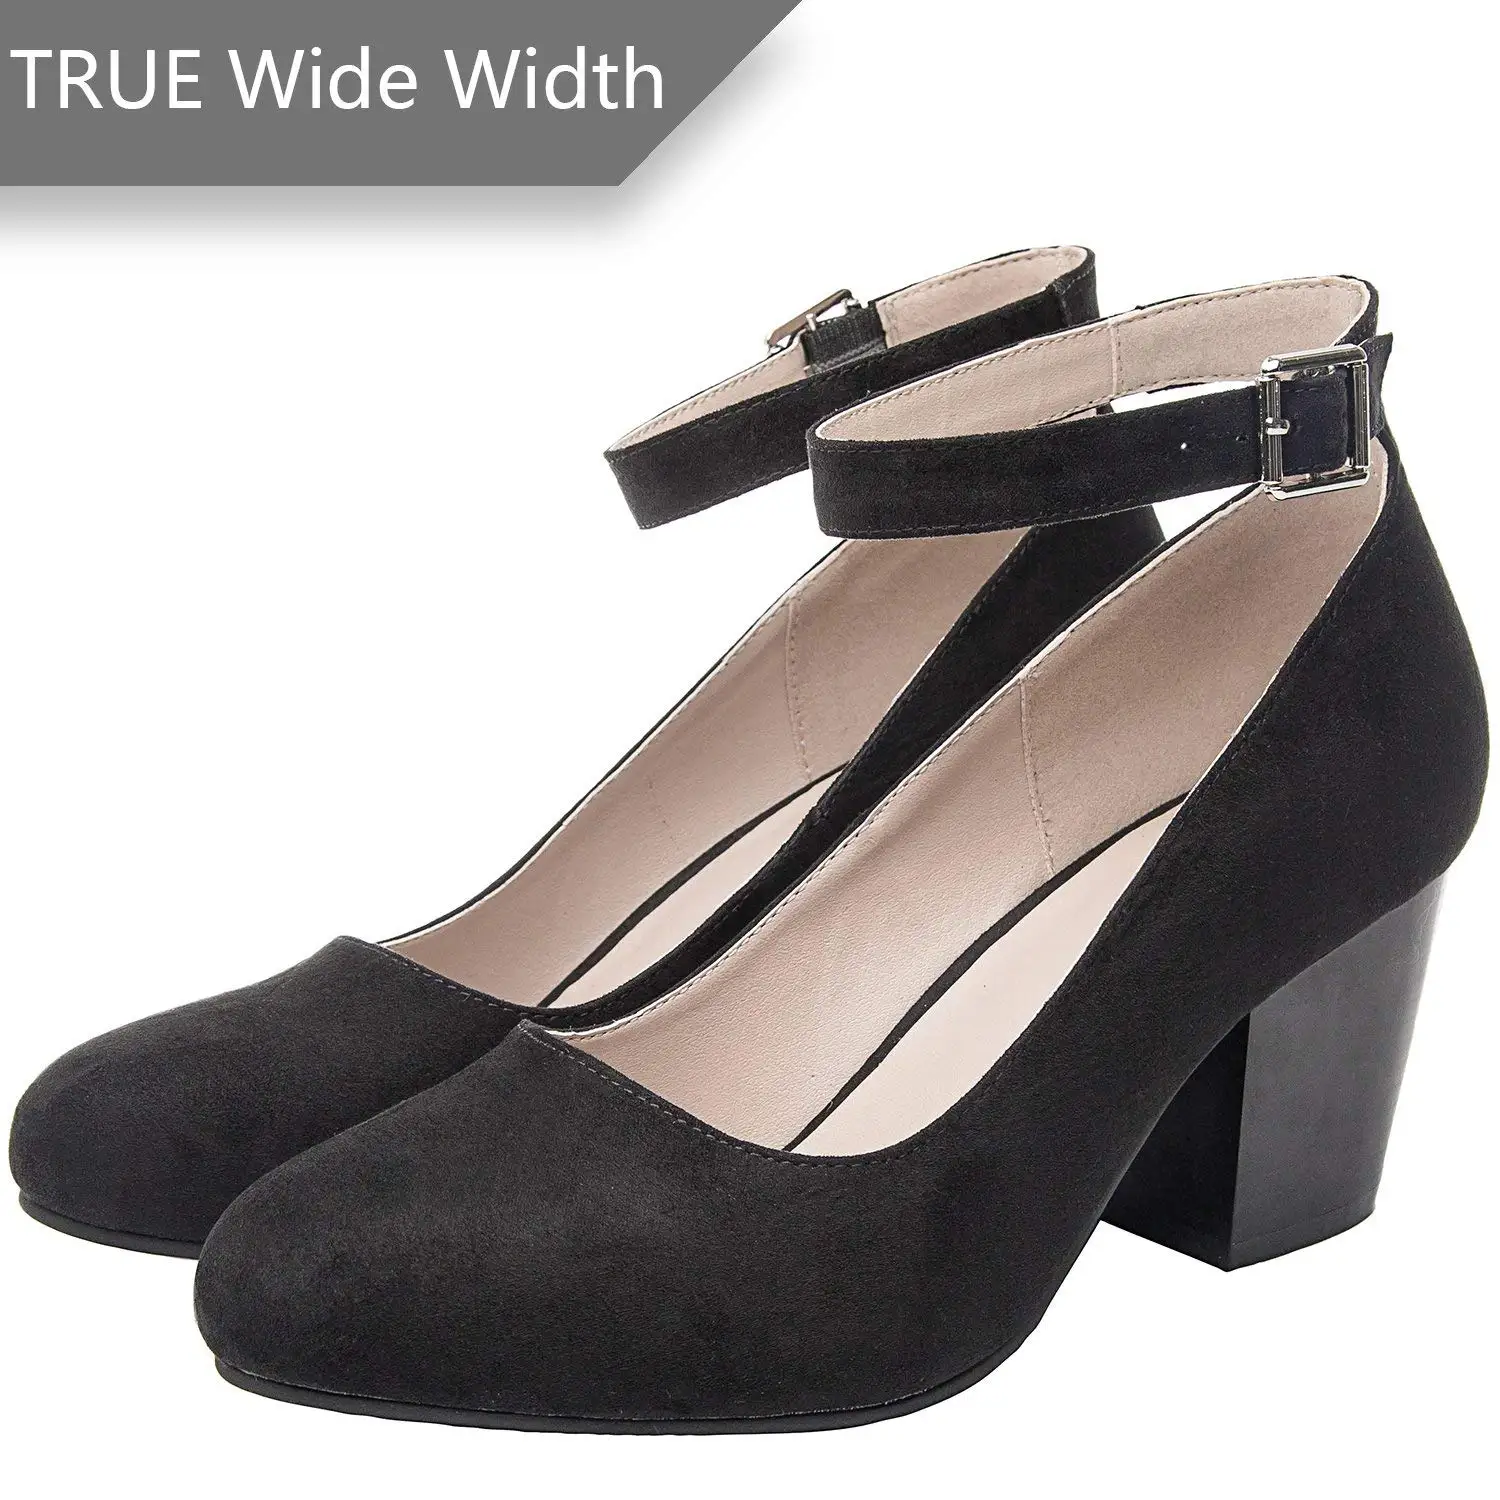 ankle strap heels wide width